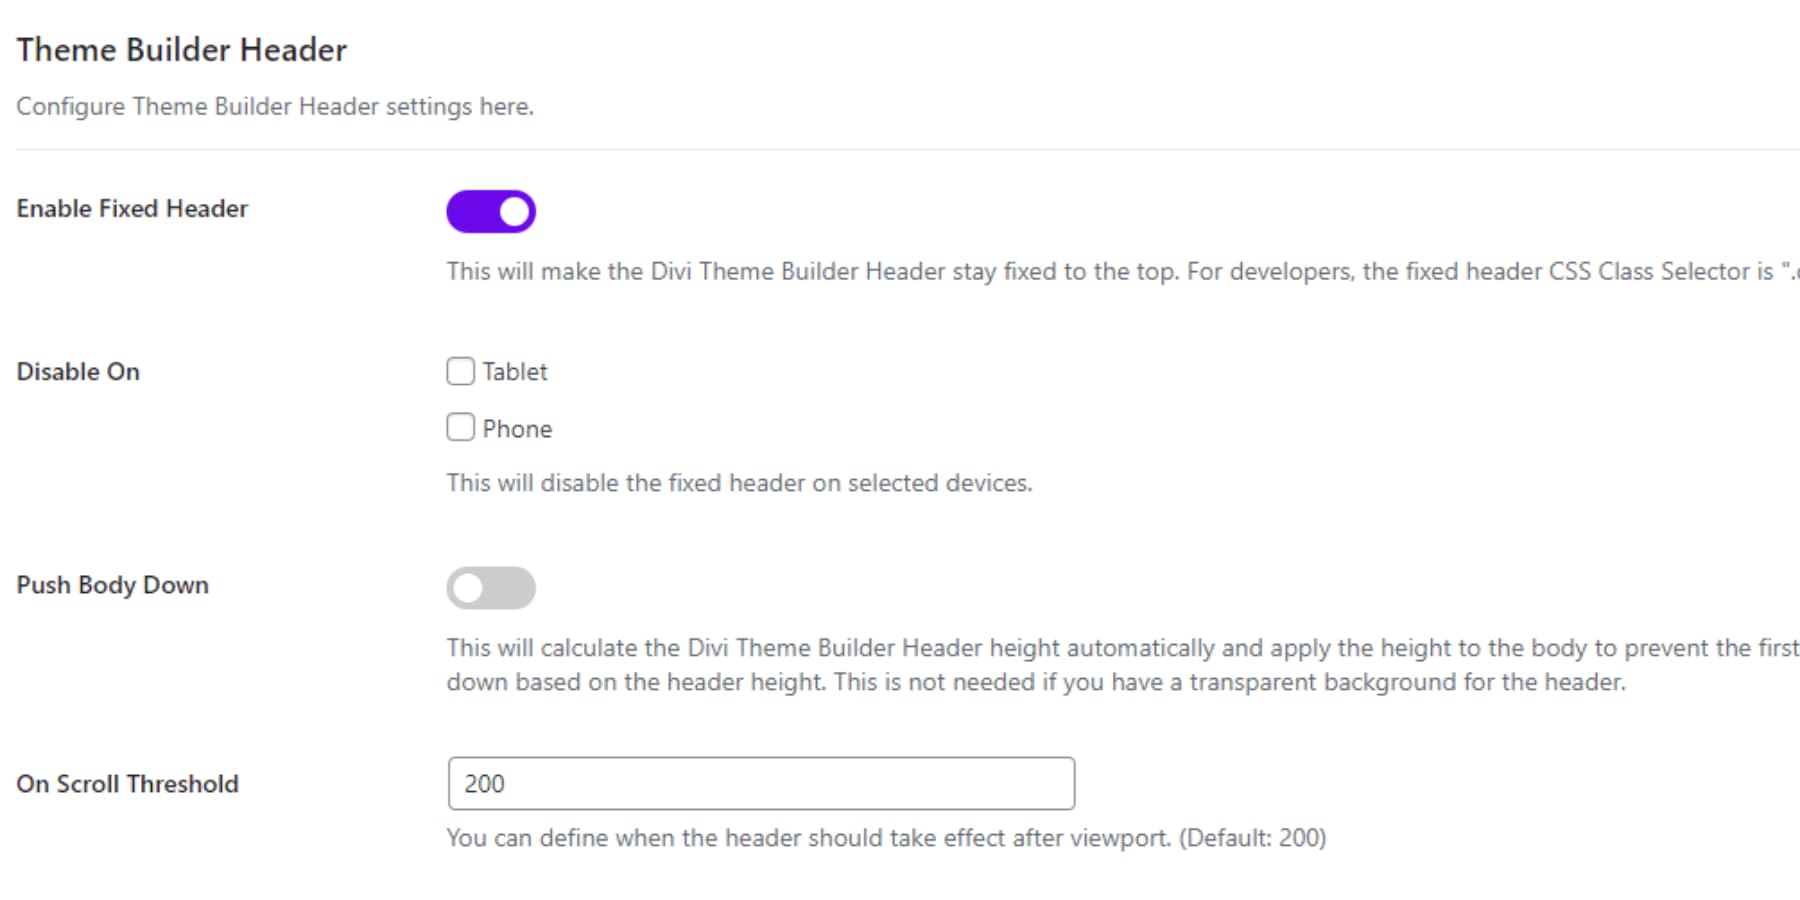 A screenshot of Theme Builder Header's Fixed Header options